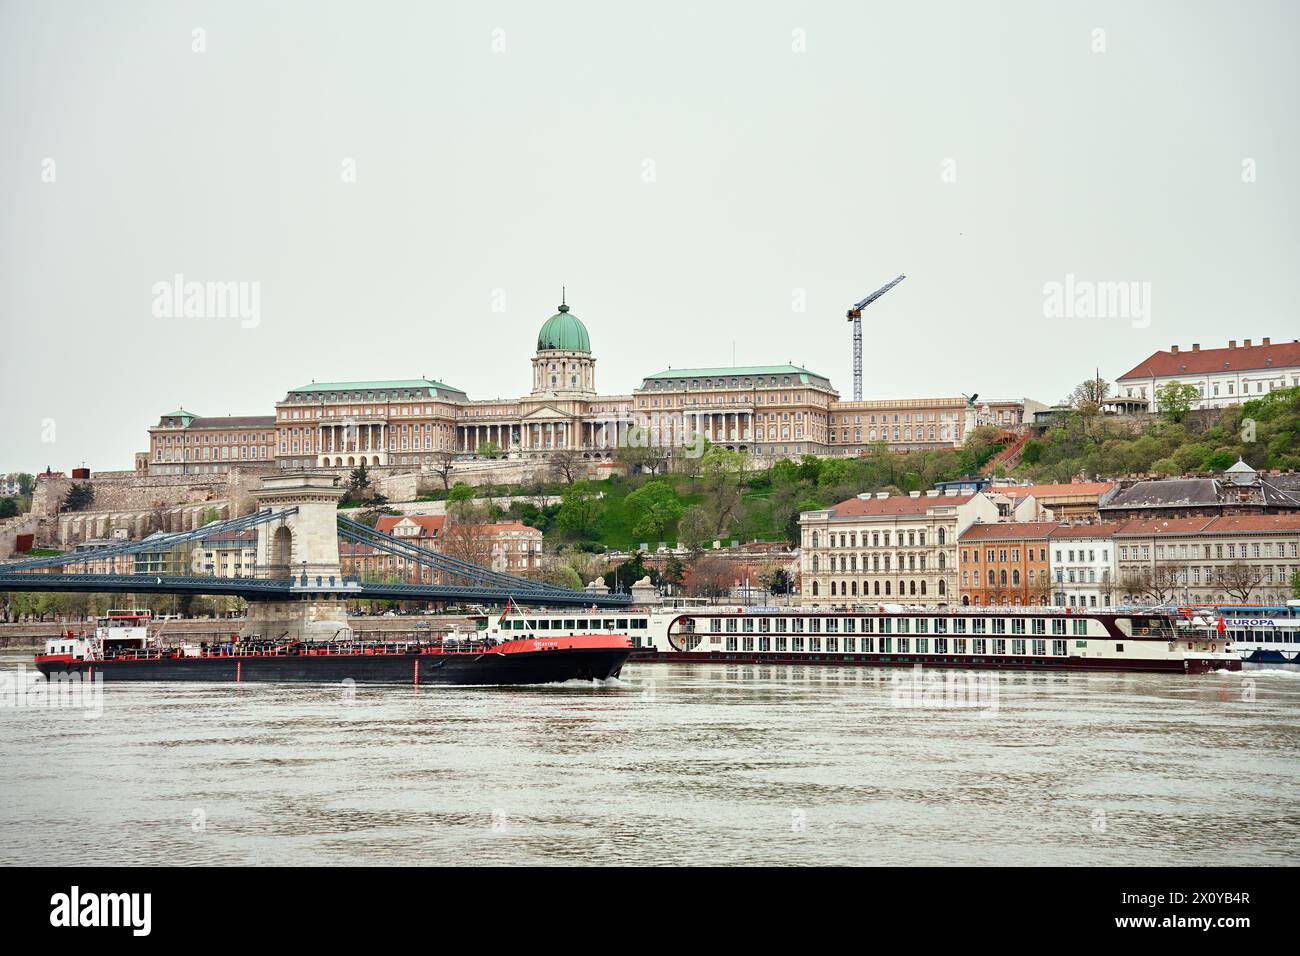 Panoramablick auf die Skyline von Budapest. Schloss Grand Buda in der Hauptstadt von Ungarn. Historische Architektur in Europa Stockfoto